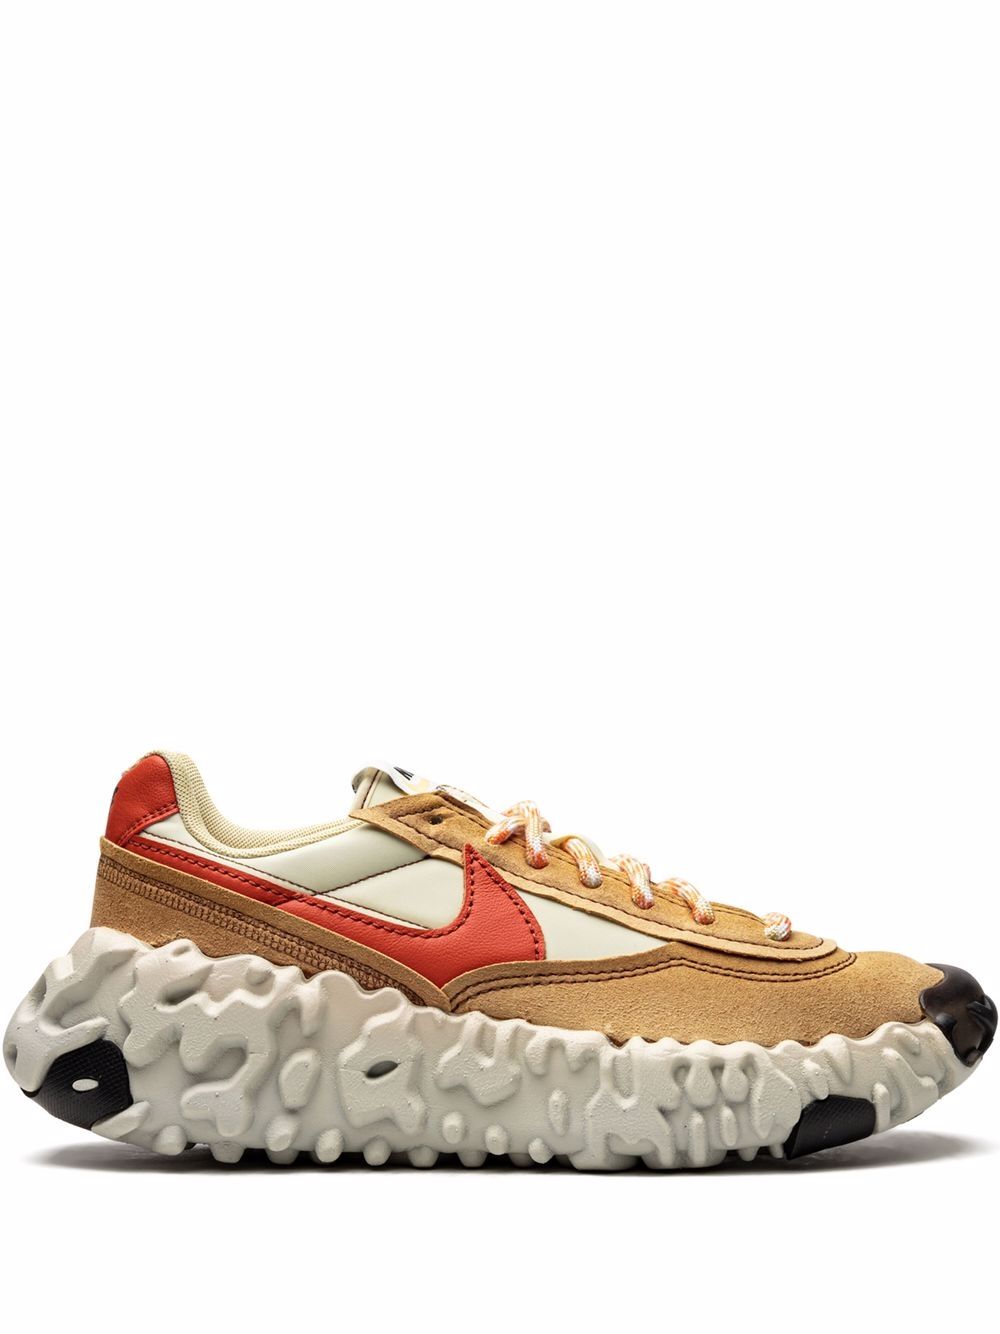 Image 1 of Nike Overbreak SP "Mars Yard" sneakers